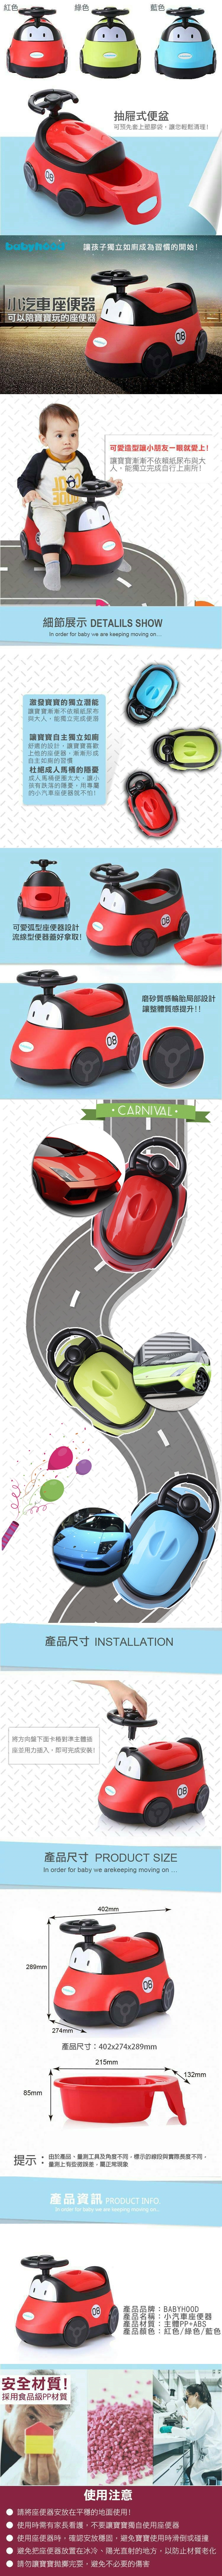 傳佳知寶babyhood-小汽車座便器(紅色/綠色/藍色)